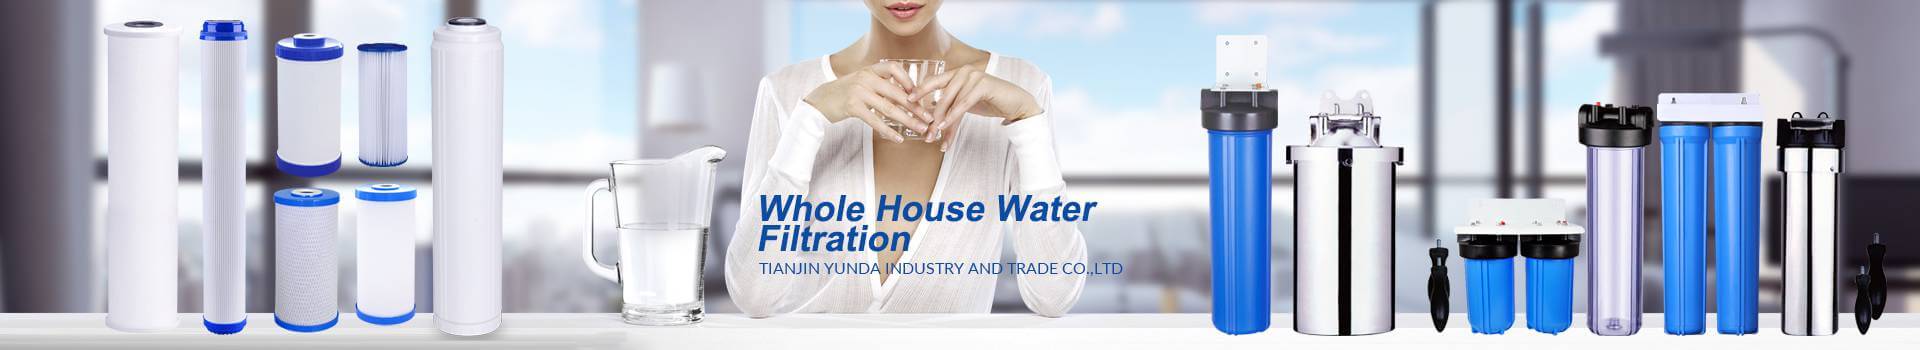 Water Filter Housing